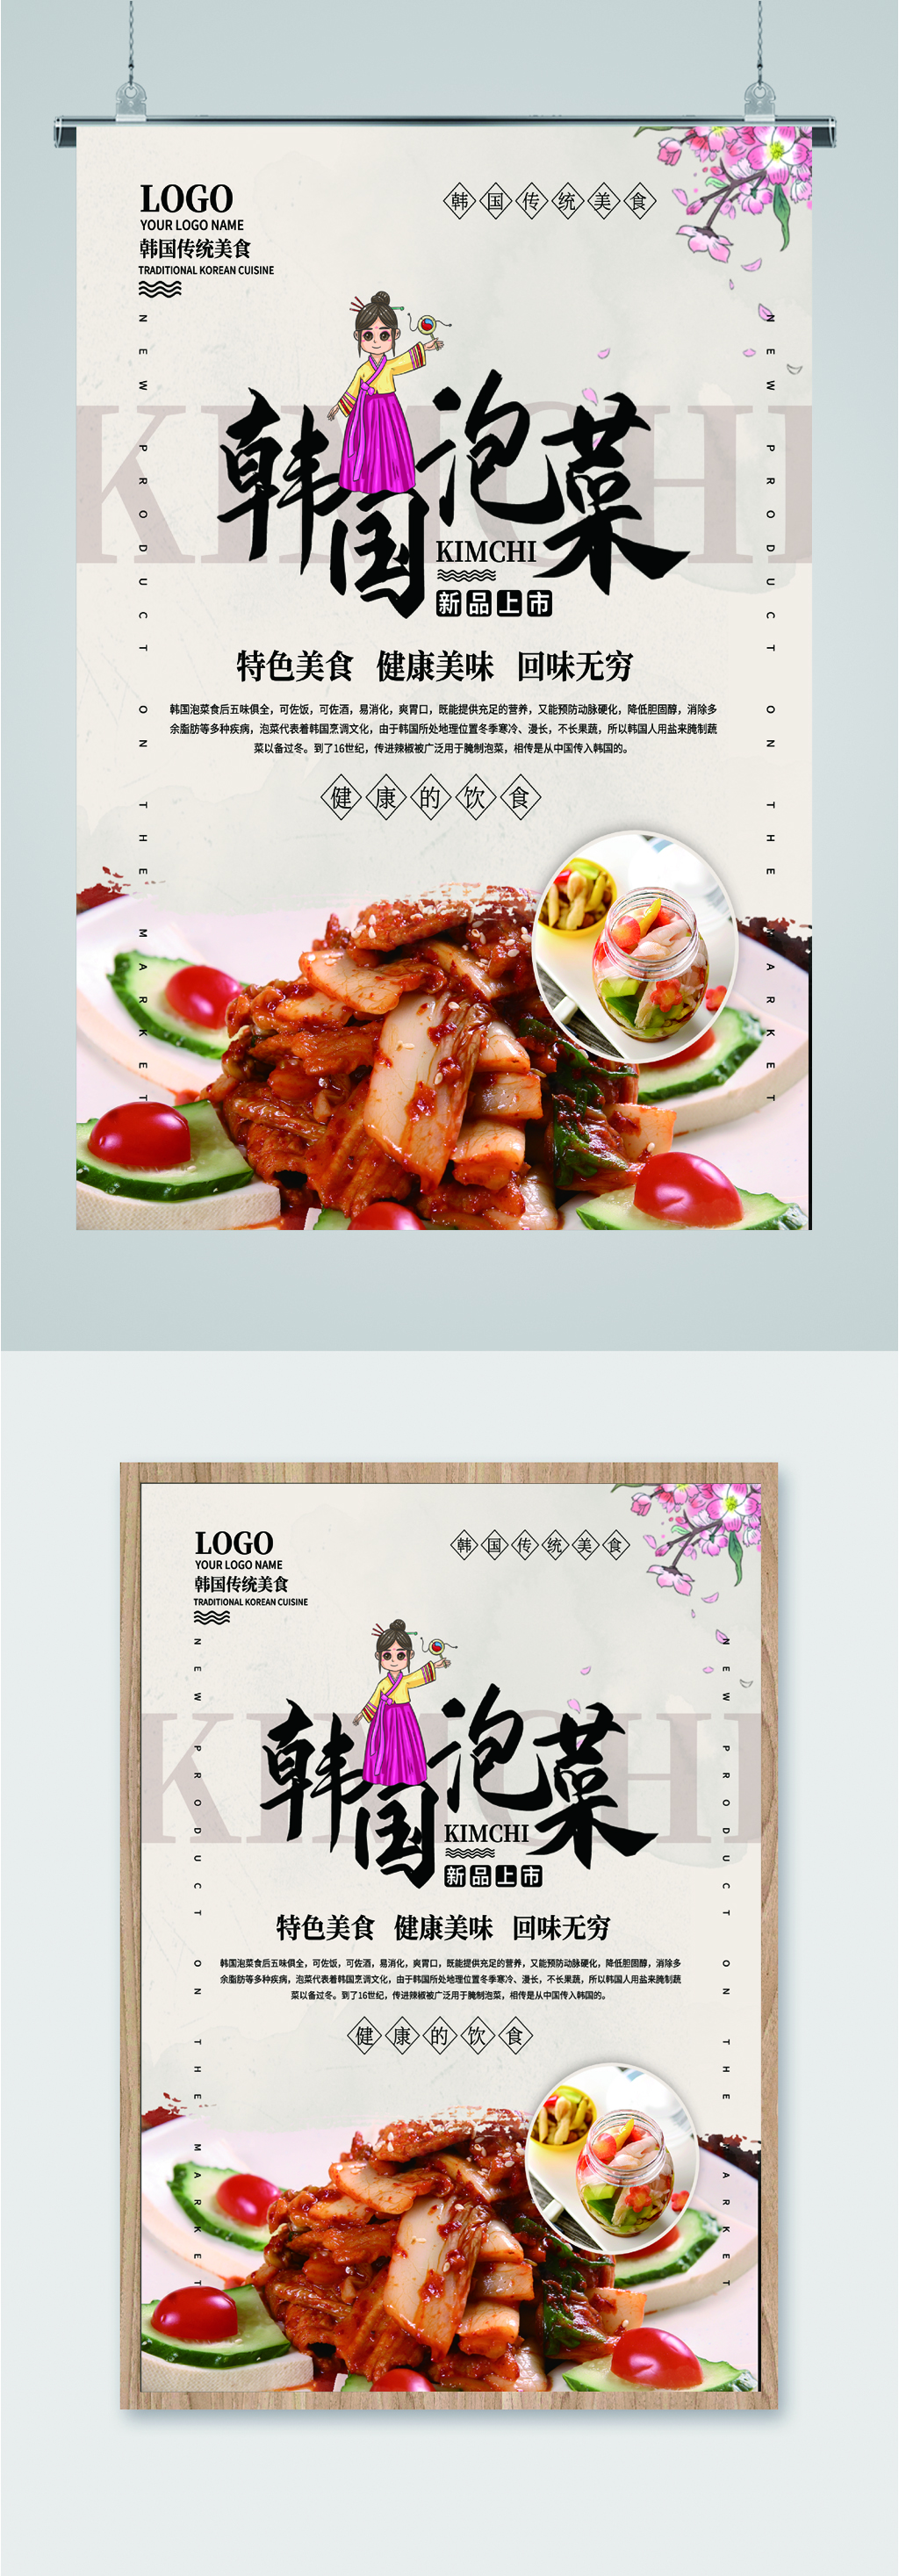 韩国泡菜特色美味宣传海报